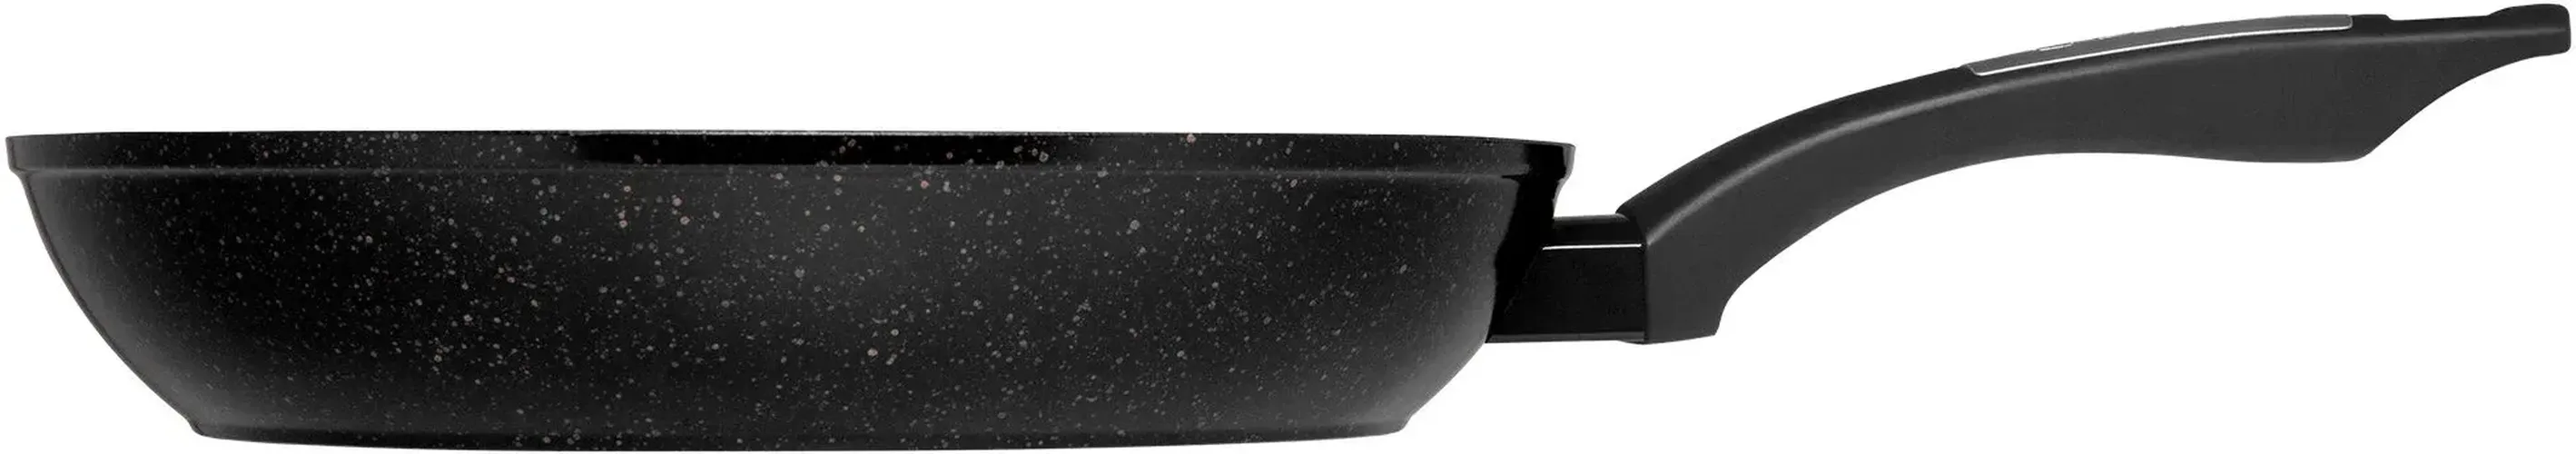 Сковорода Polaris Monolit-26F, 26 см, Черный, купить недорого